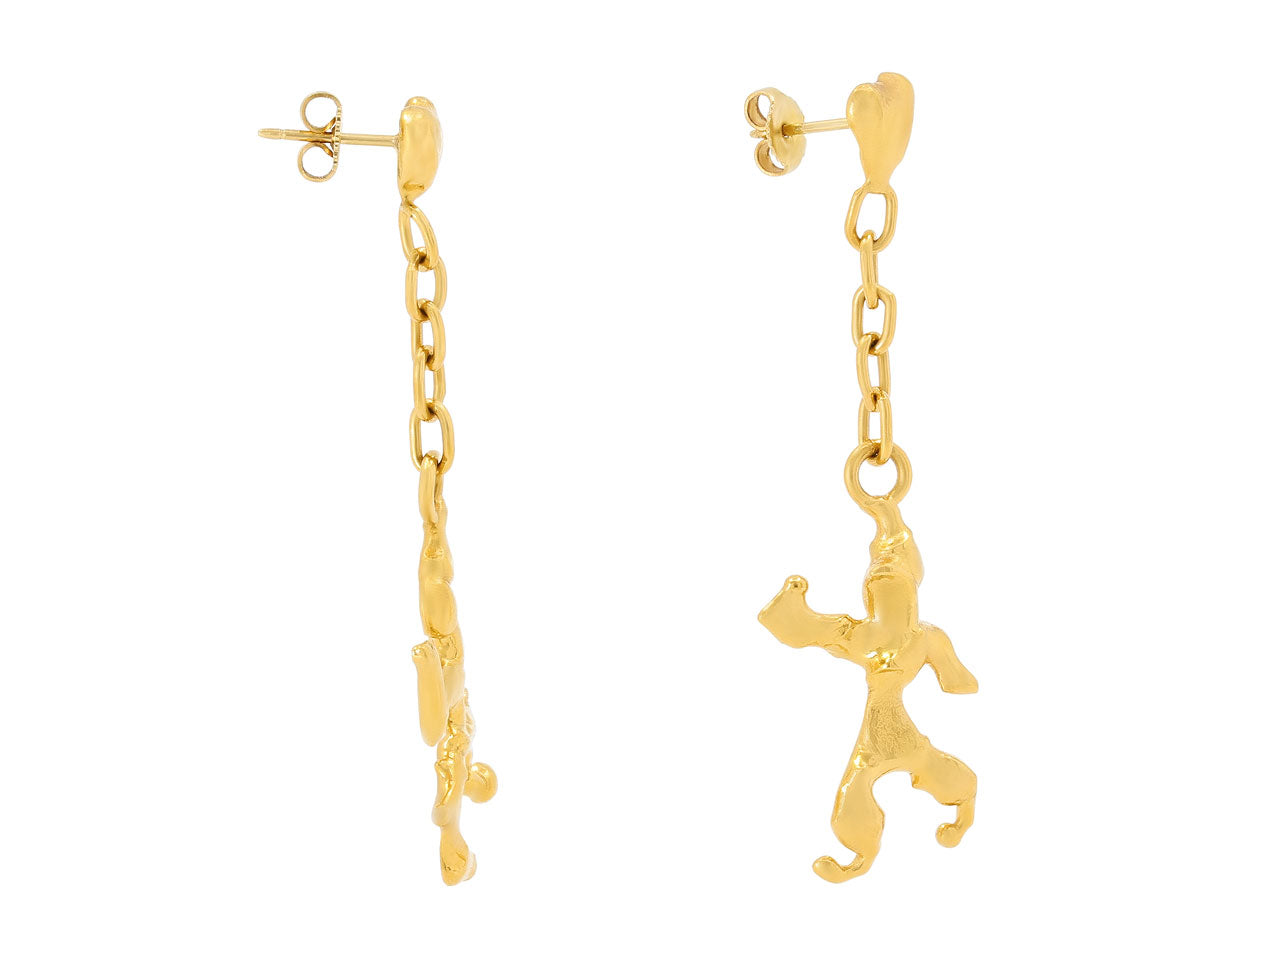 Jean Mahie Charming Monsters Earrings in 22K Gold